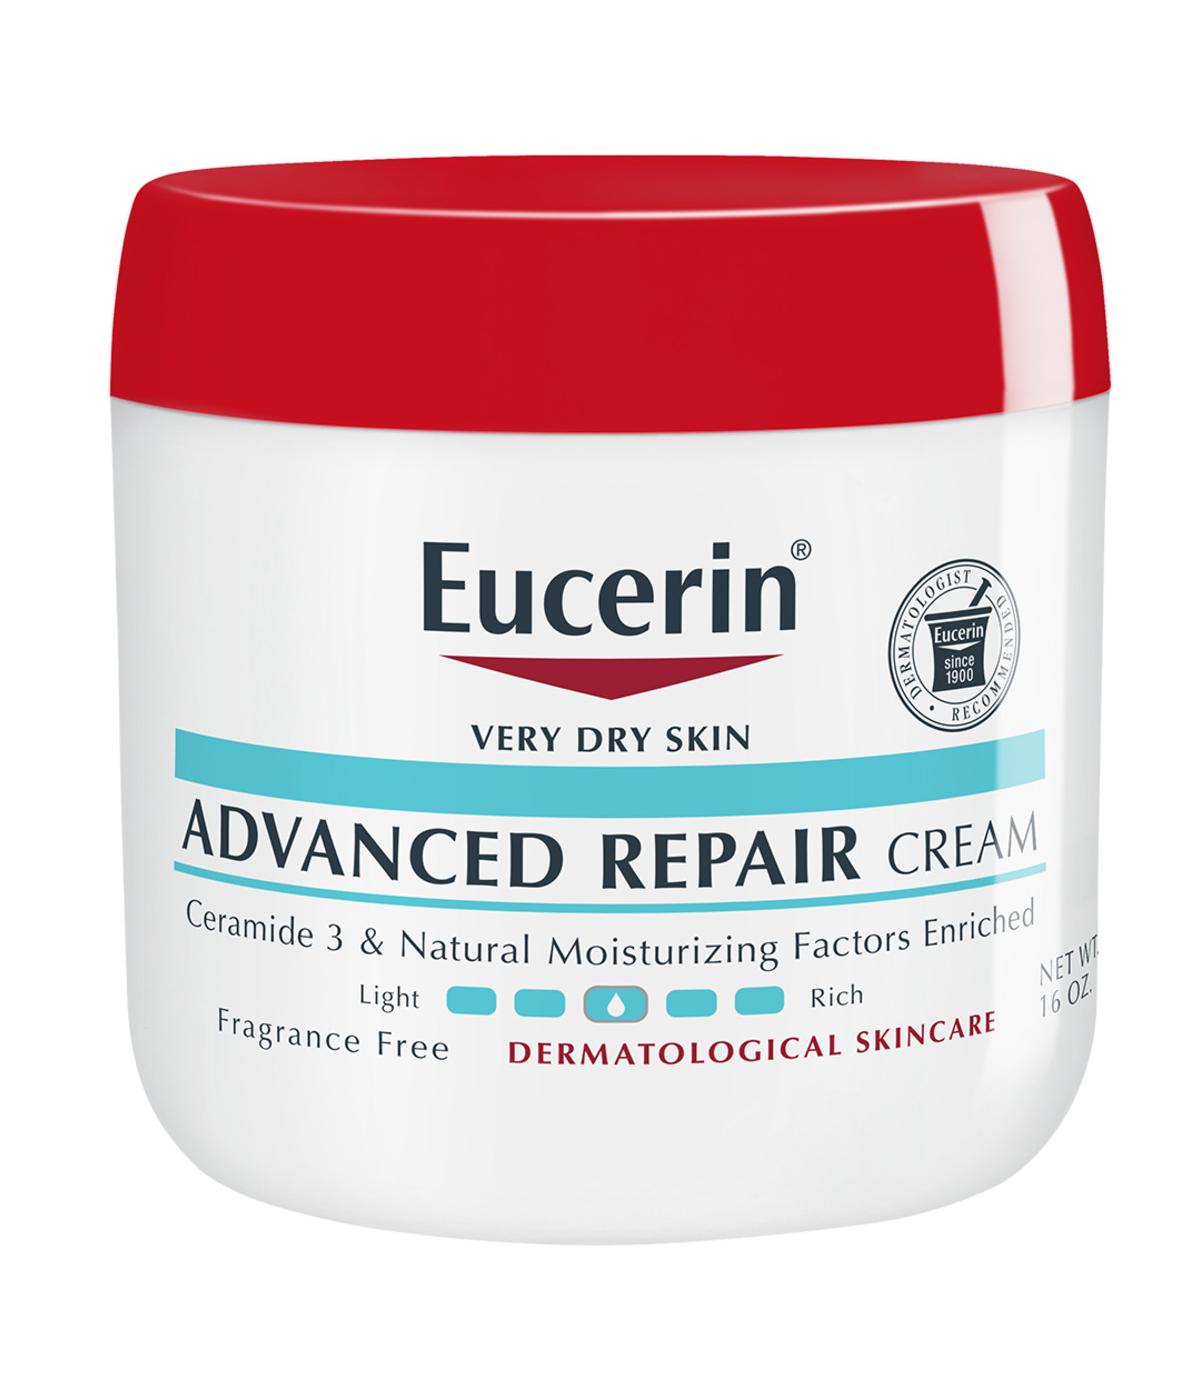 Eucerin Advanced Repair Cream; image 1 of 4